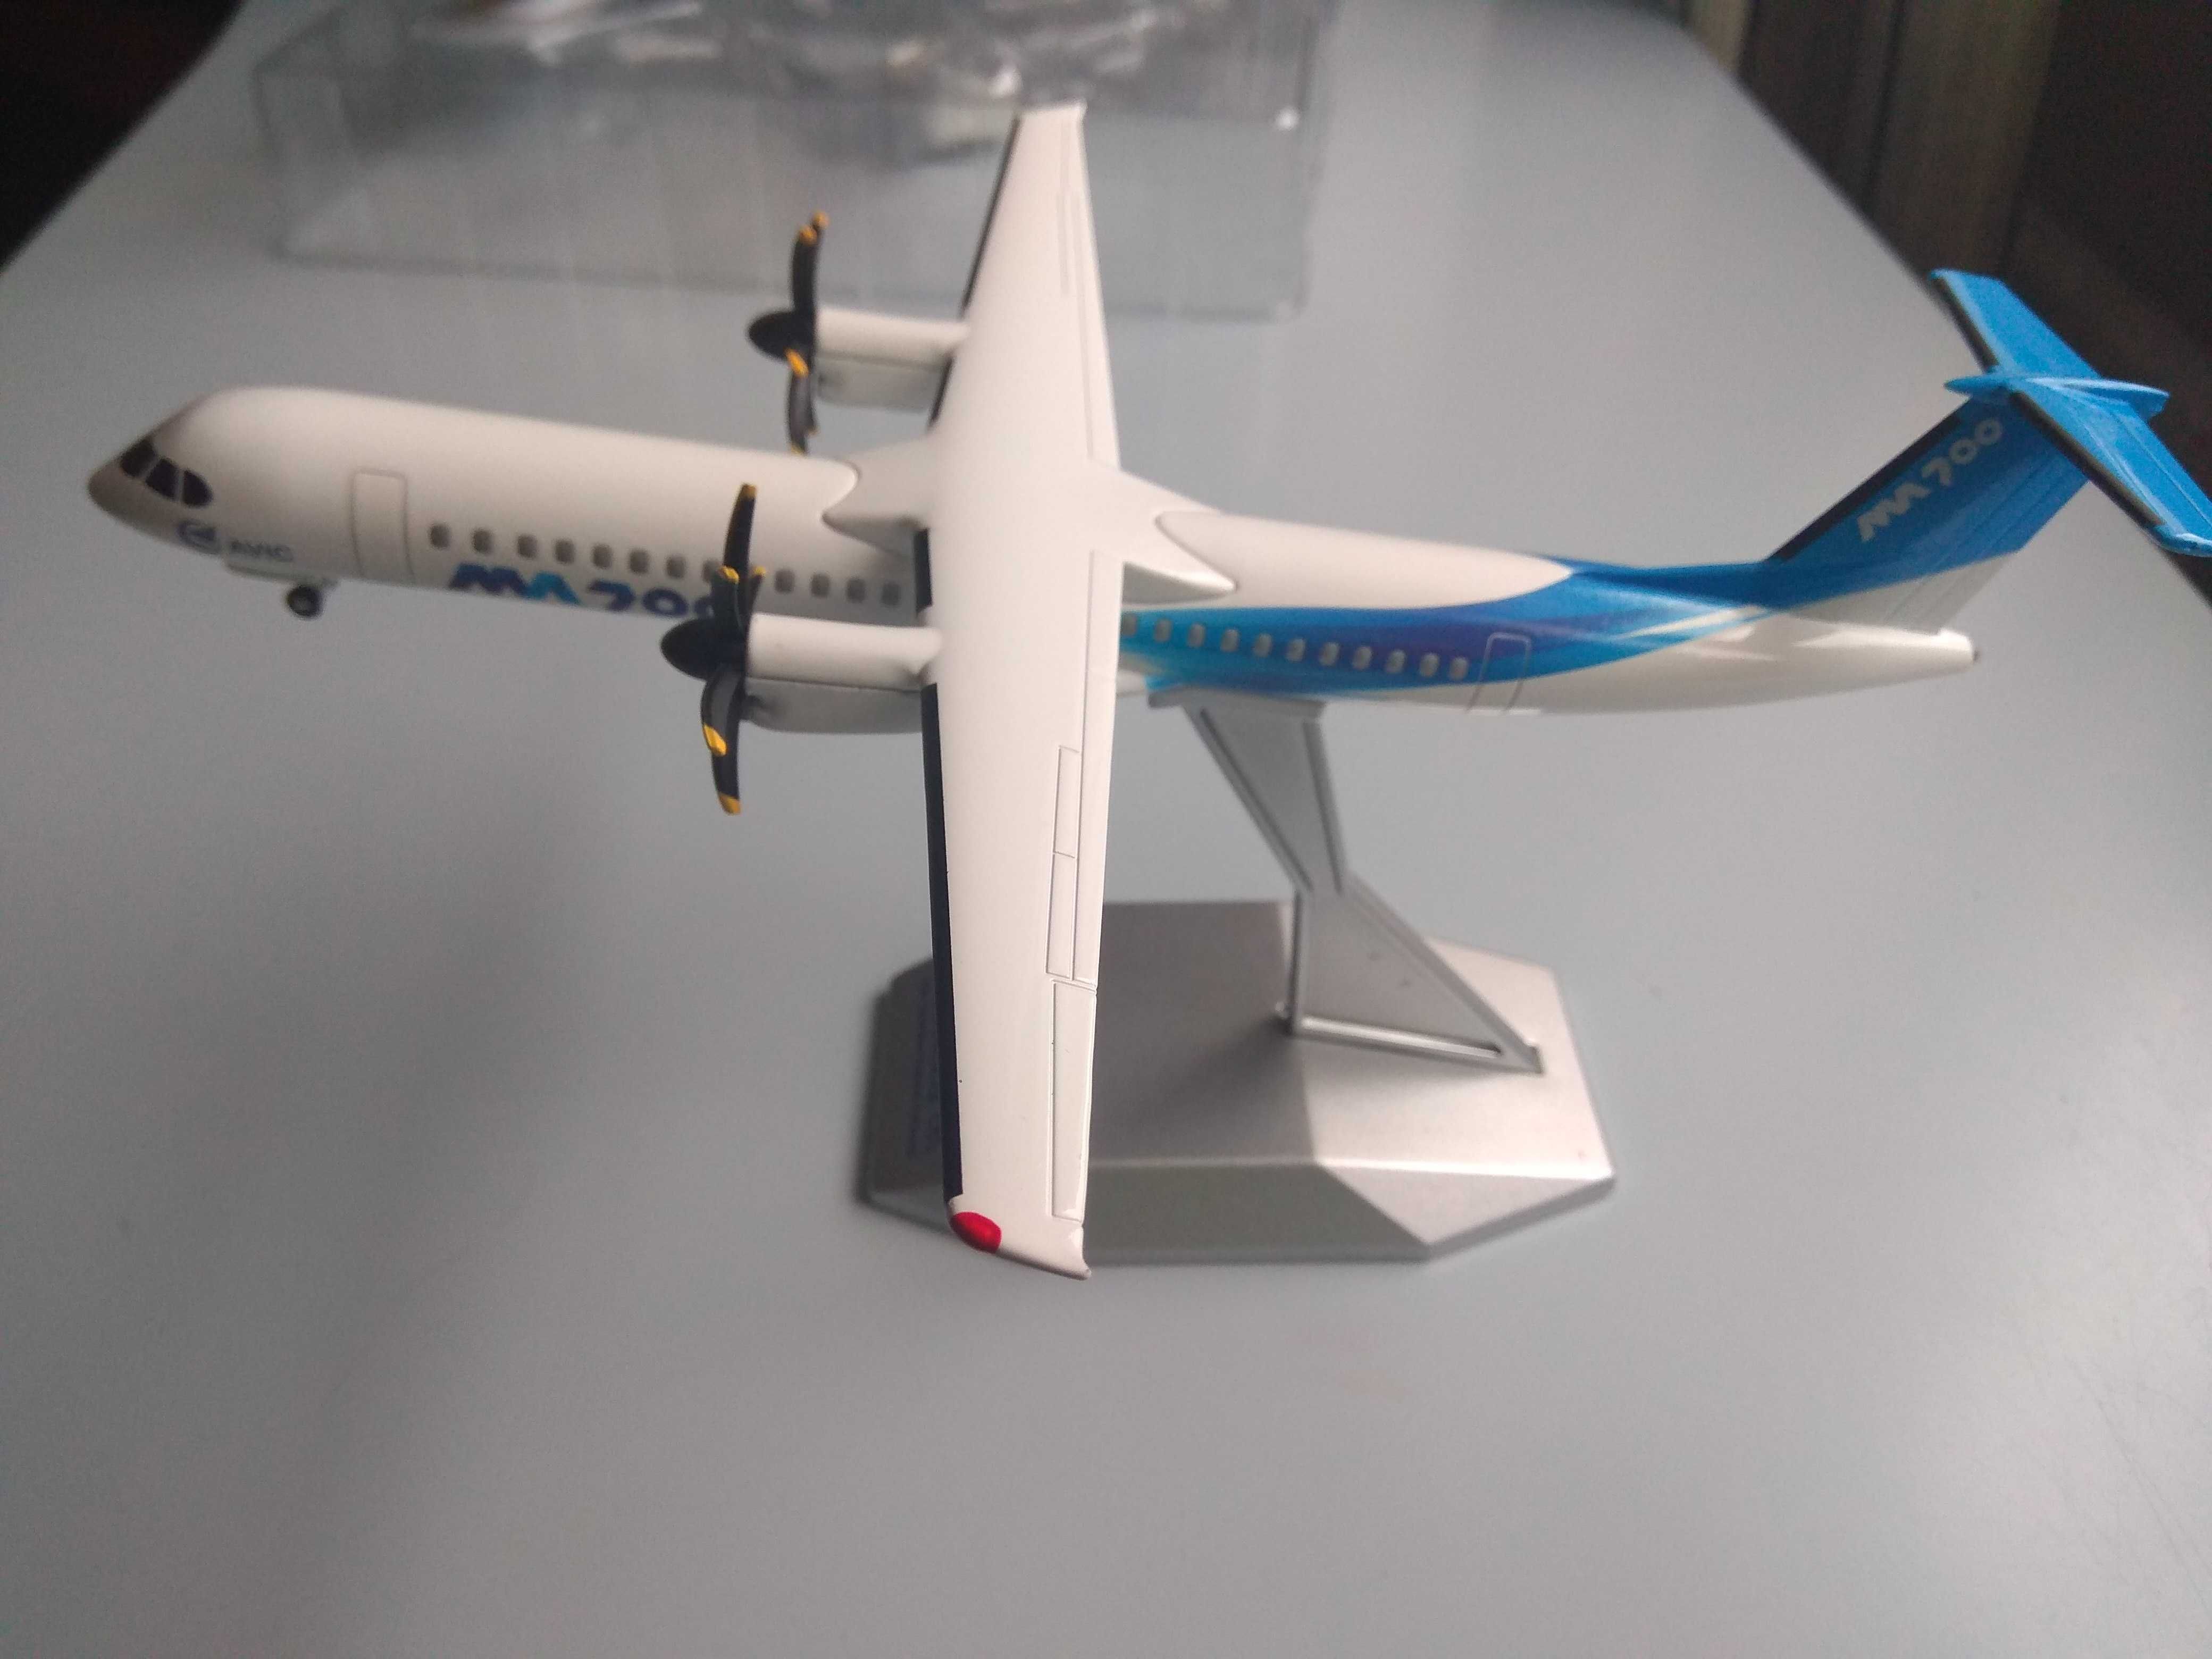 новые коллекционные модели пассажирских самолетов МА-700 и С919